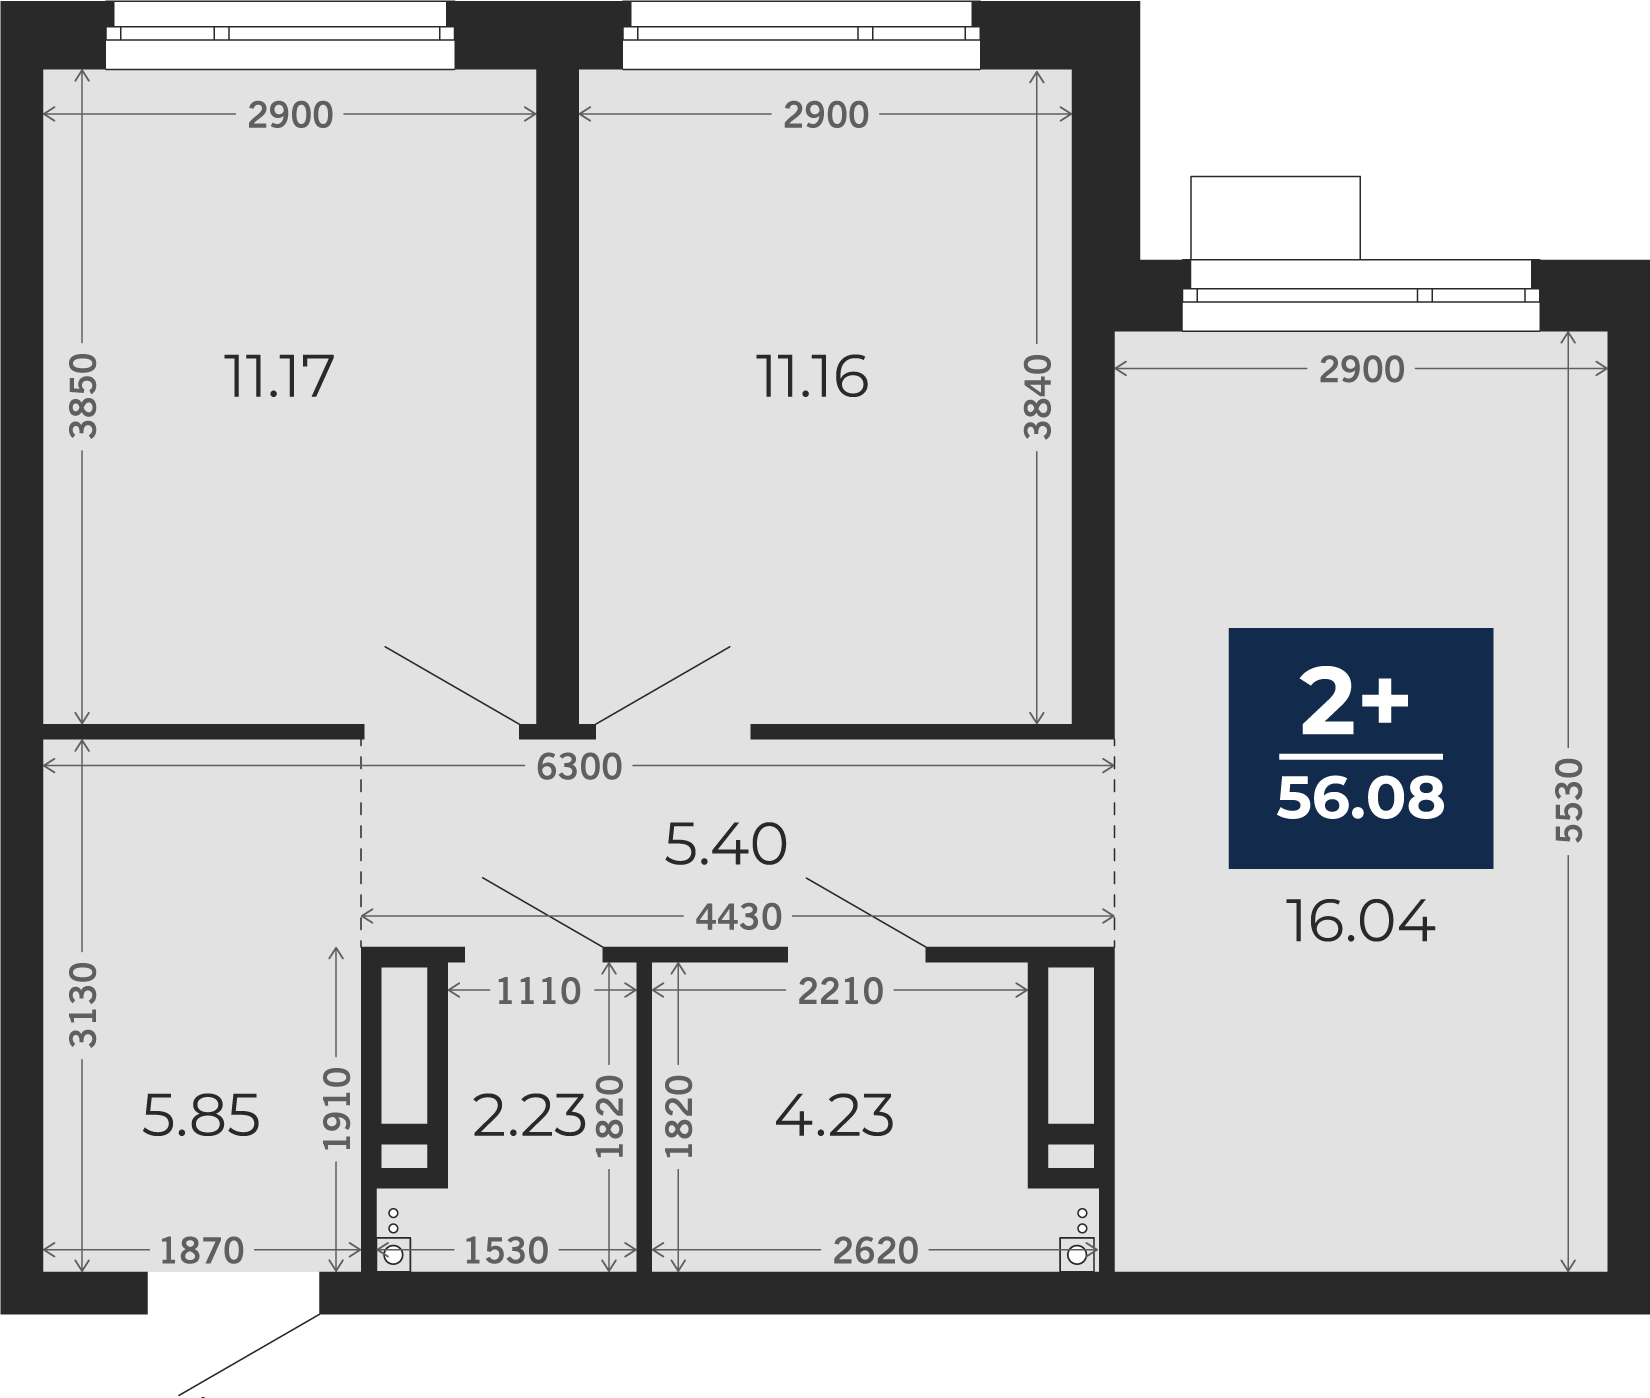 Квартира № 234, 2-комнатная, 56.08 кв. м, 13 этаж